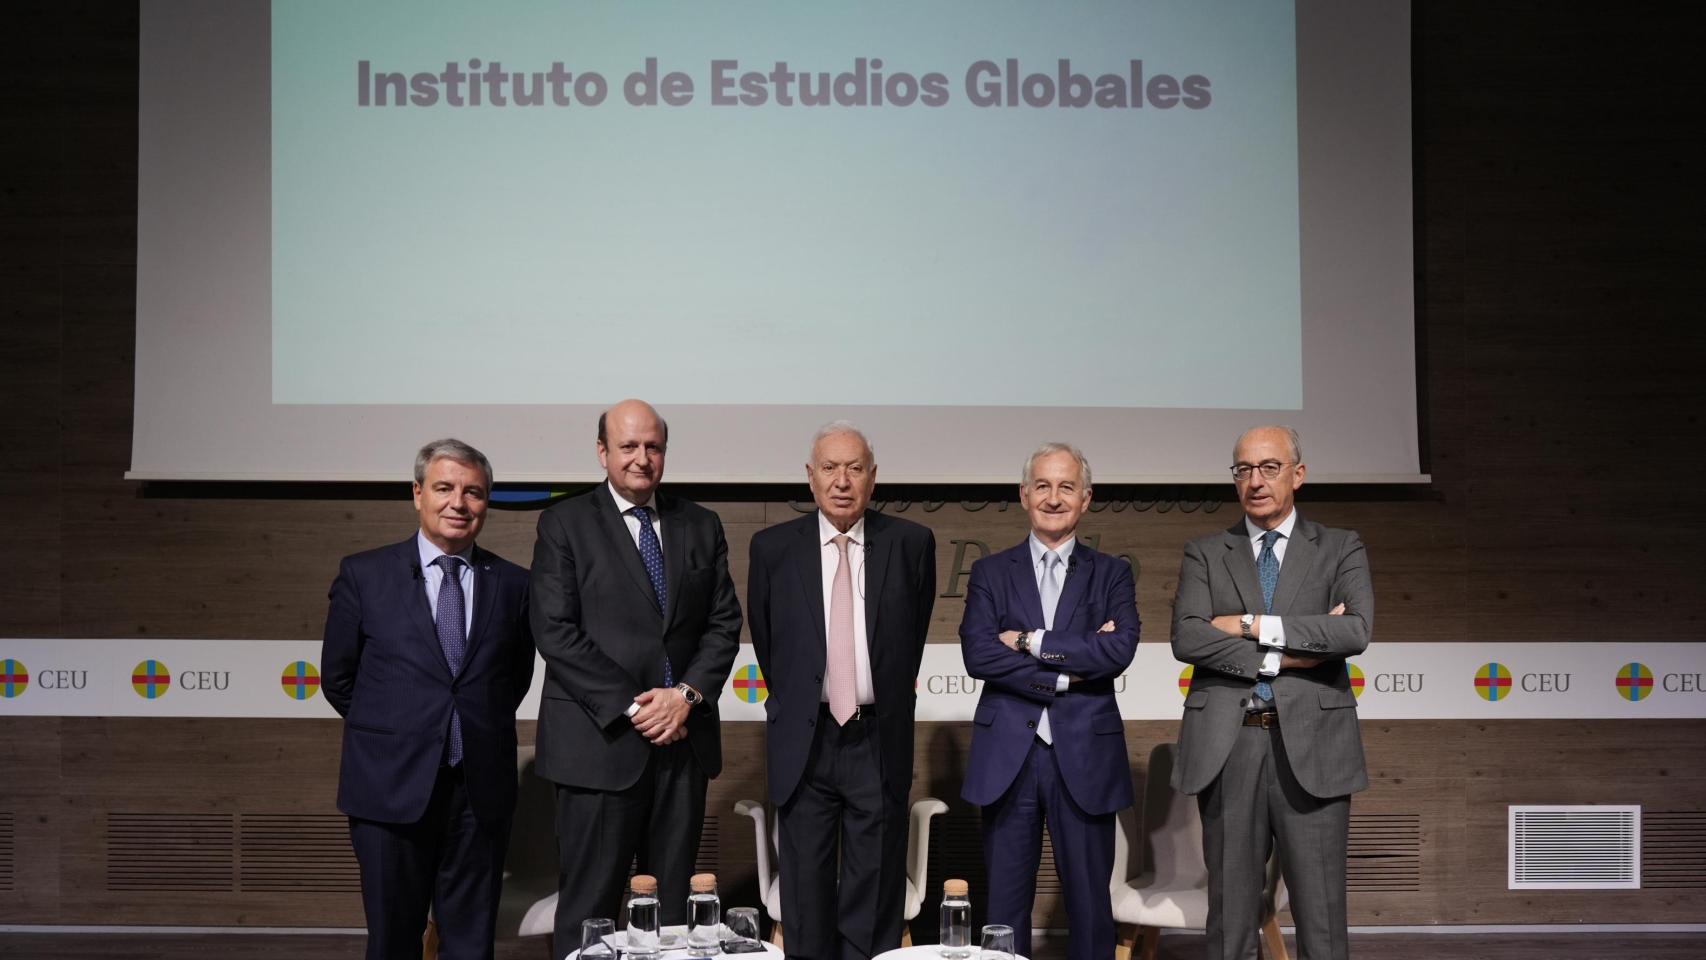 Acto inaugural del Instituto de Estudios Globales